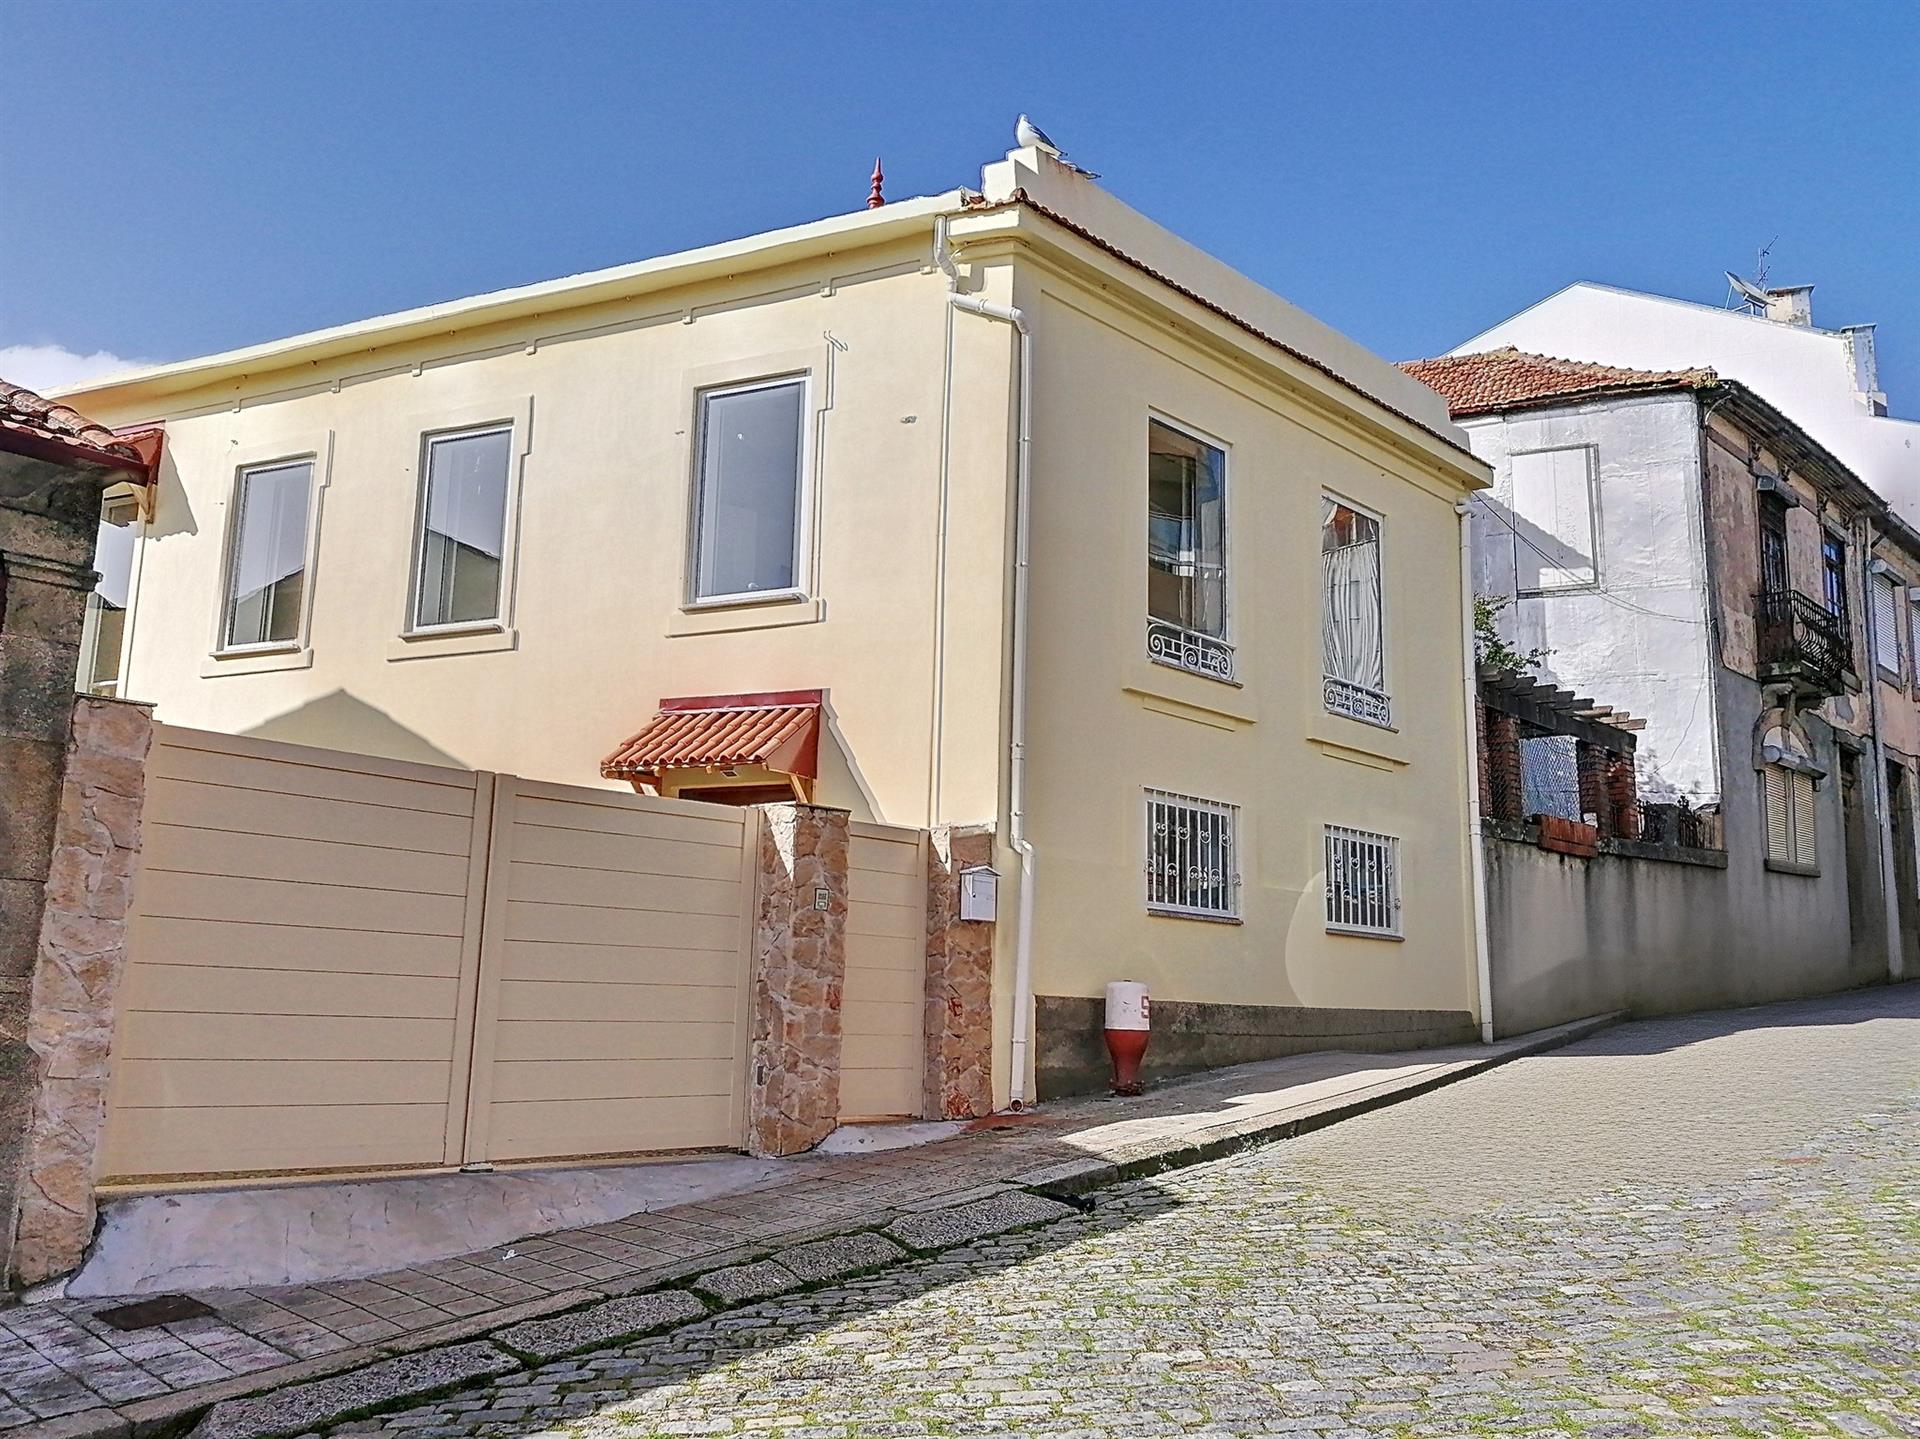 Maison bifamiliale de 5 chambres entièrement réhabilitée à Campanhã, près de Dragão